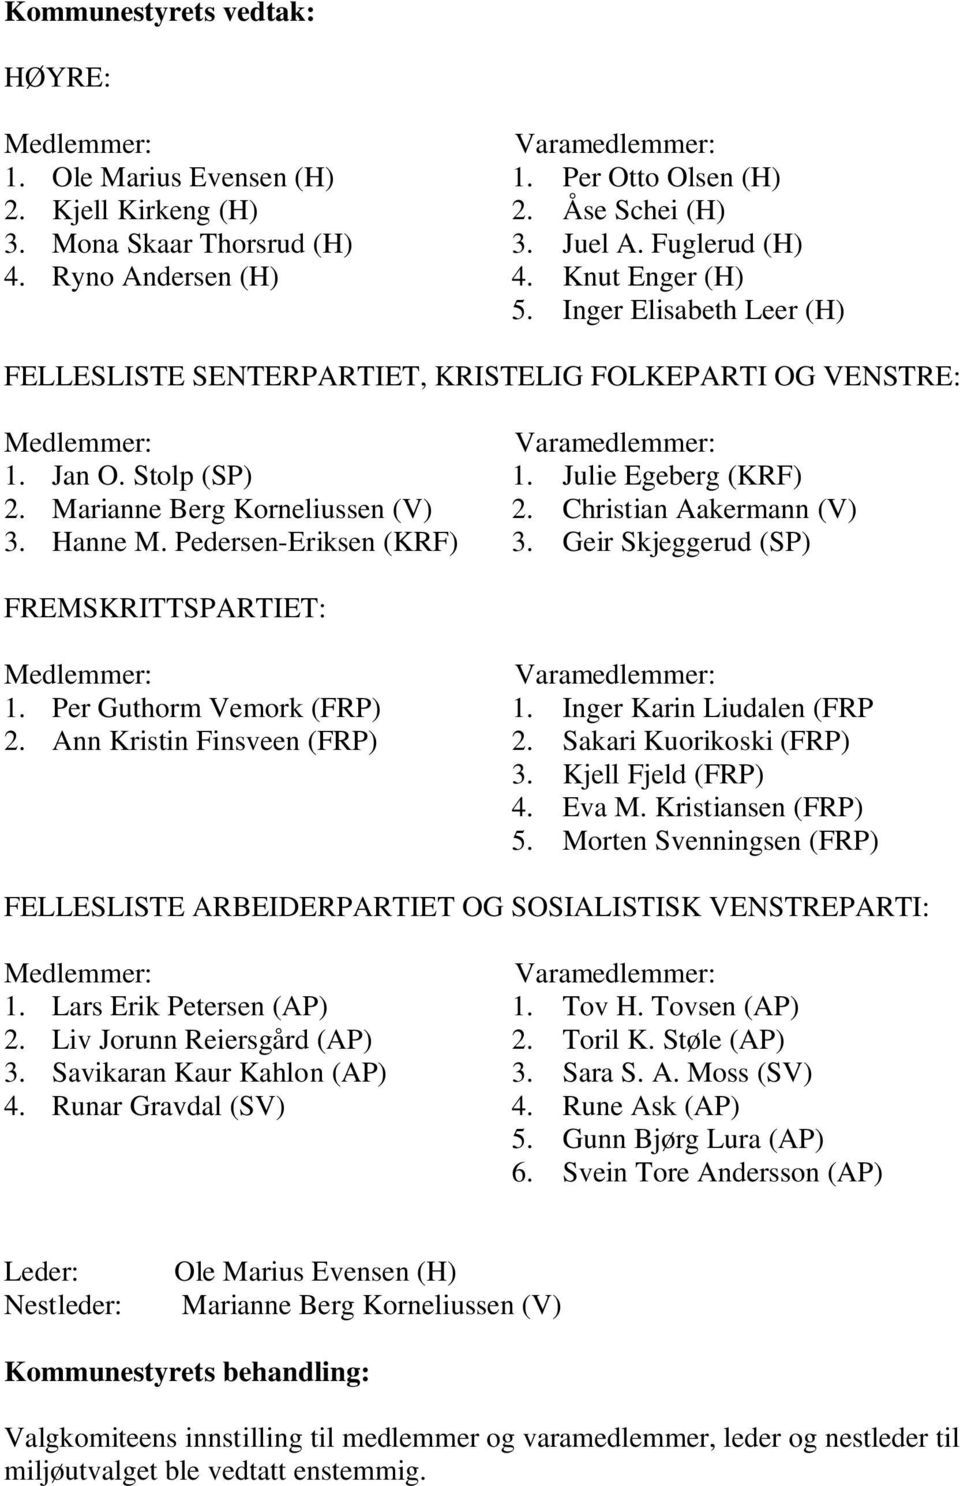 Christian Aakermann (V) 3. Hanne M. Pedersen-Eriksen (KRF) 3. Geir Skjeggerud (SP) FREMSKRITTSPARTIET: 1. Per Guthorm Vemork (FRP) 1. Inger Karin Liudalen (FRP 2. Ann Kristin Finsveen (FRP) 2.